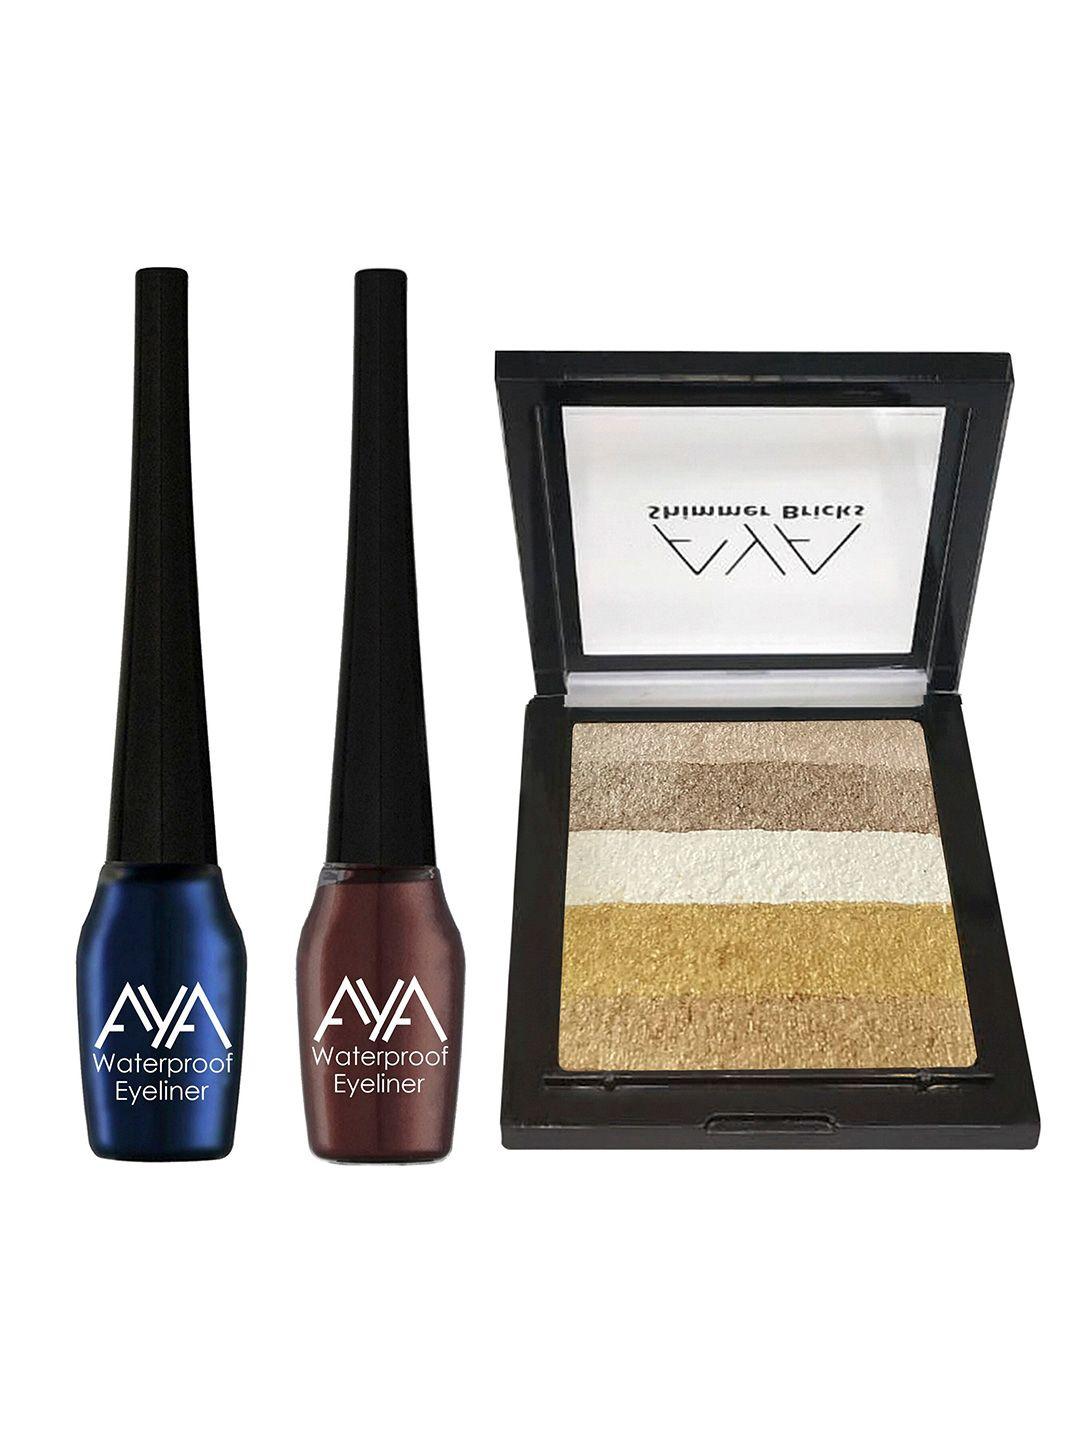 aya eyeliner & shimmer brick highlighter makeup gift set